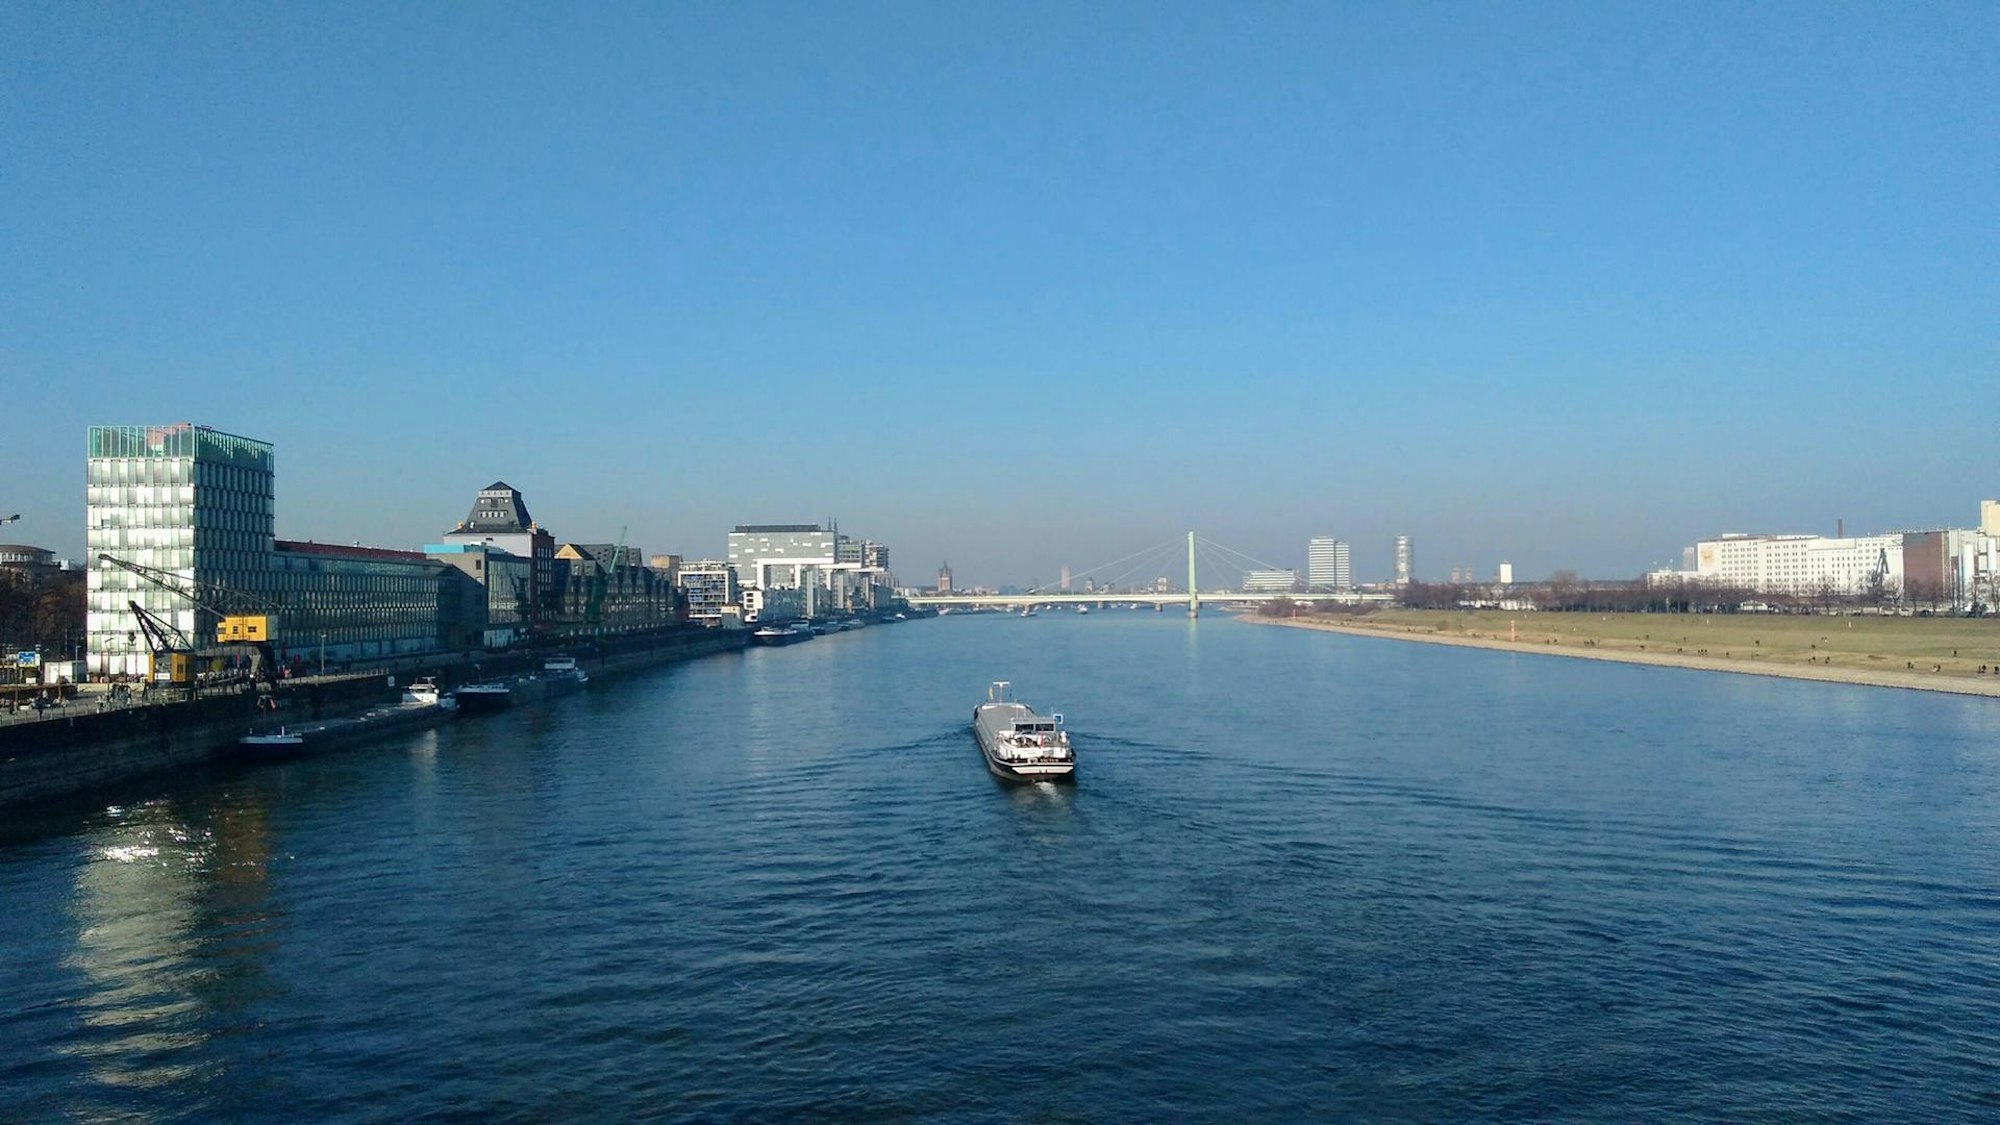 Blick auf ein Schiff auf dem Rhein, darüber blauer Himmel